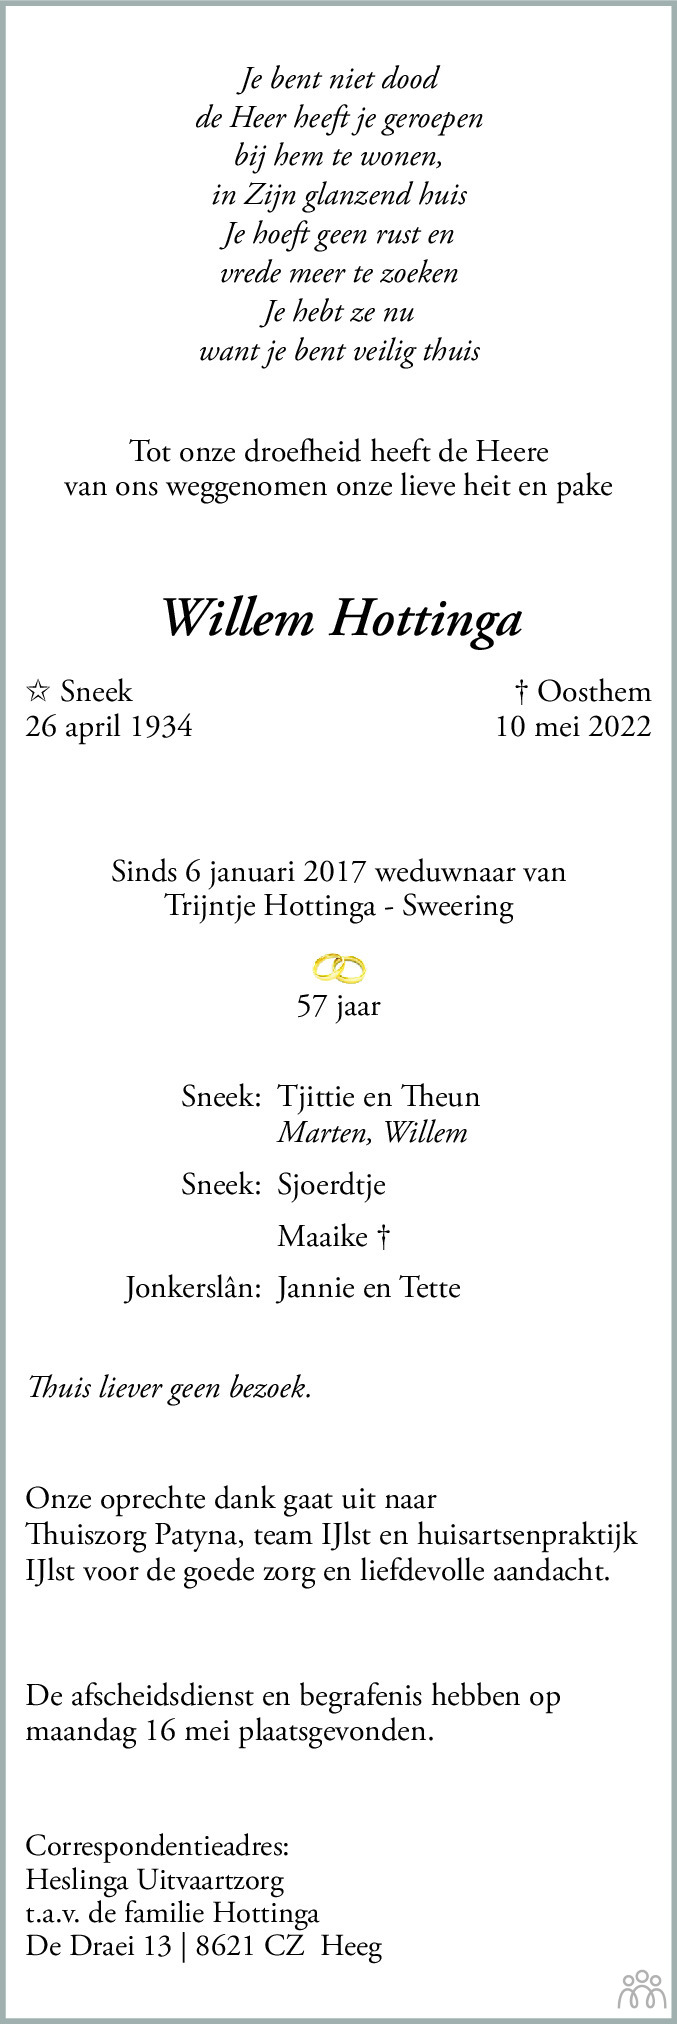 Overlijdensbericht van Willem Hottinga in Sneeker Nieuwsblad